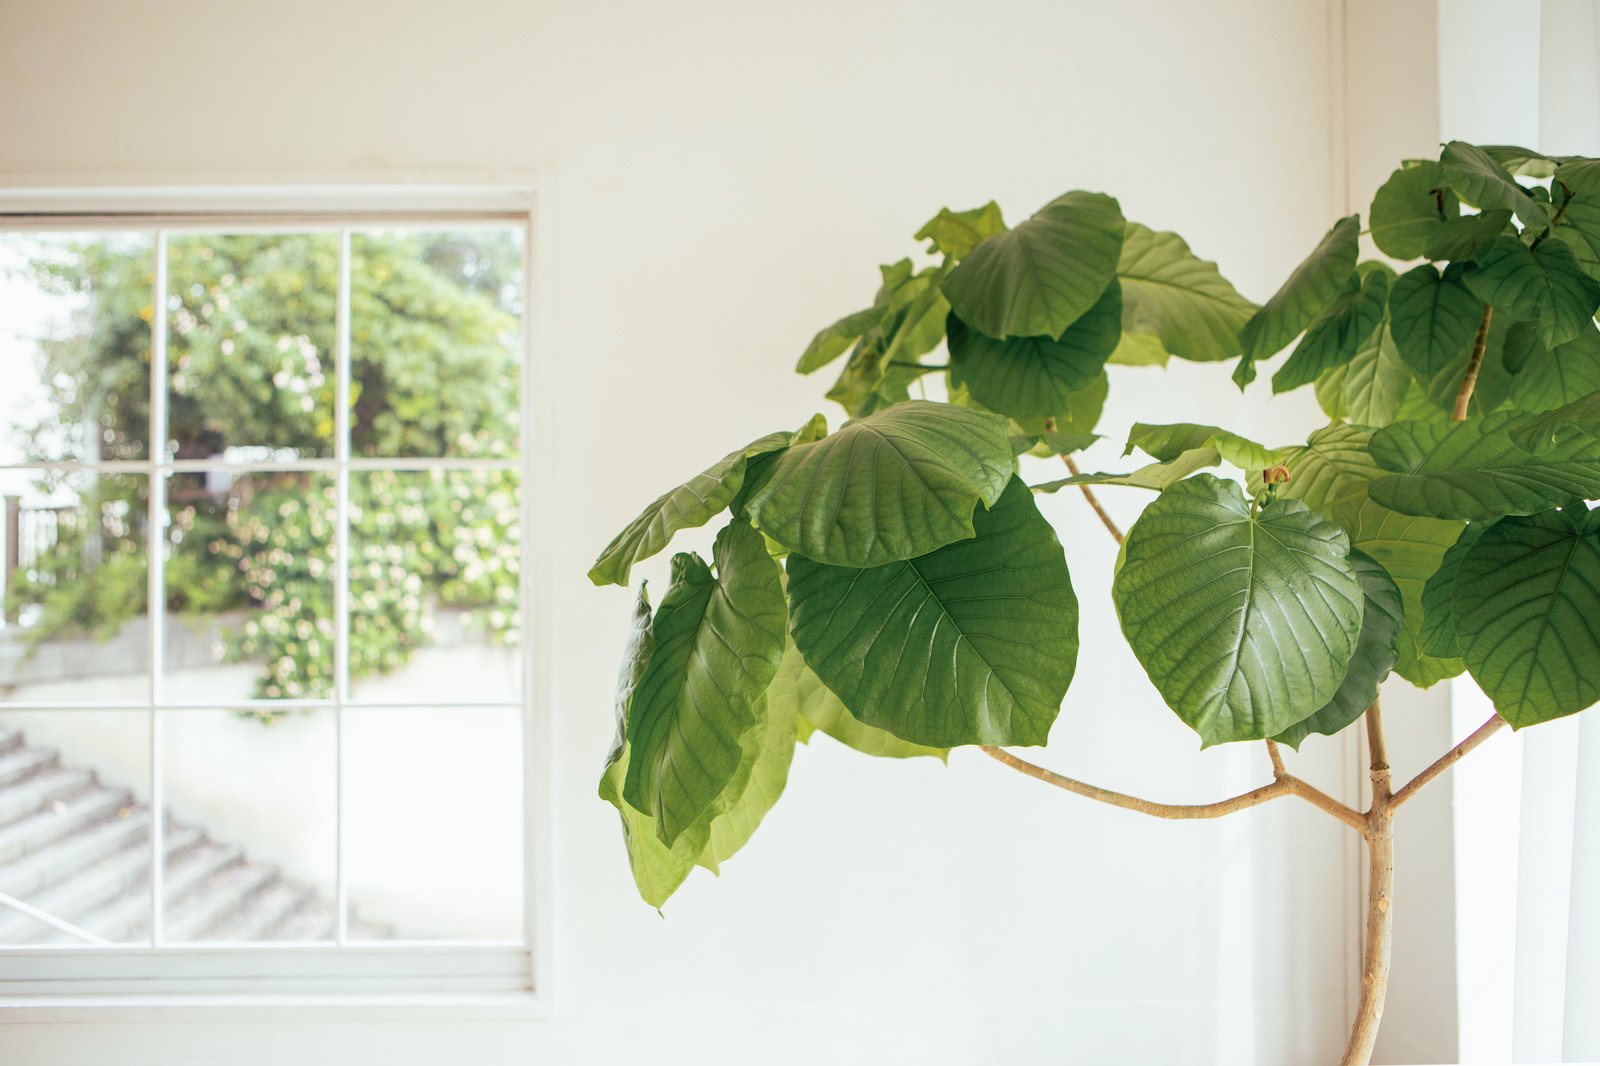 「窓際に置かれた観葉植物 | フリー素材のぱくたそ」の写真